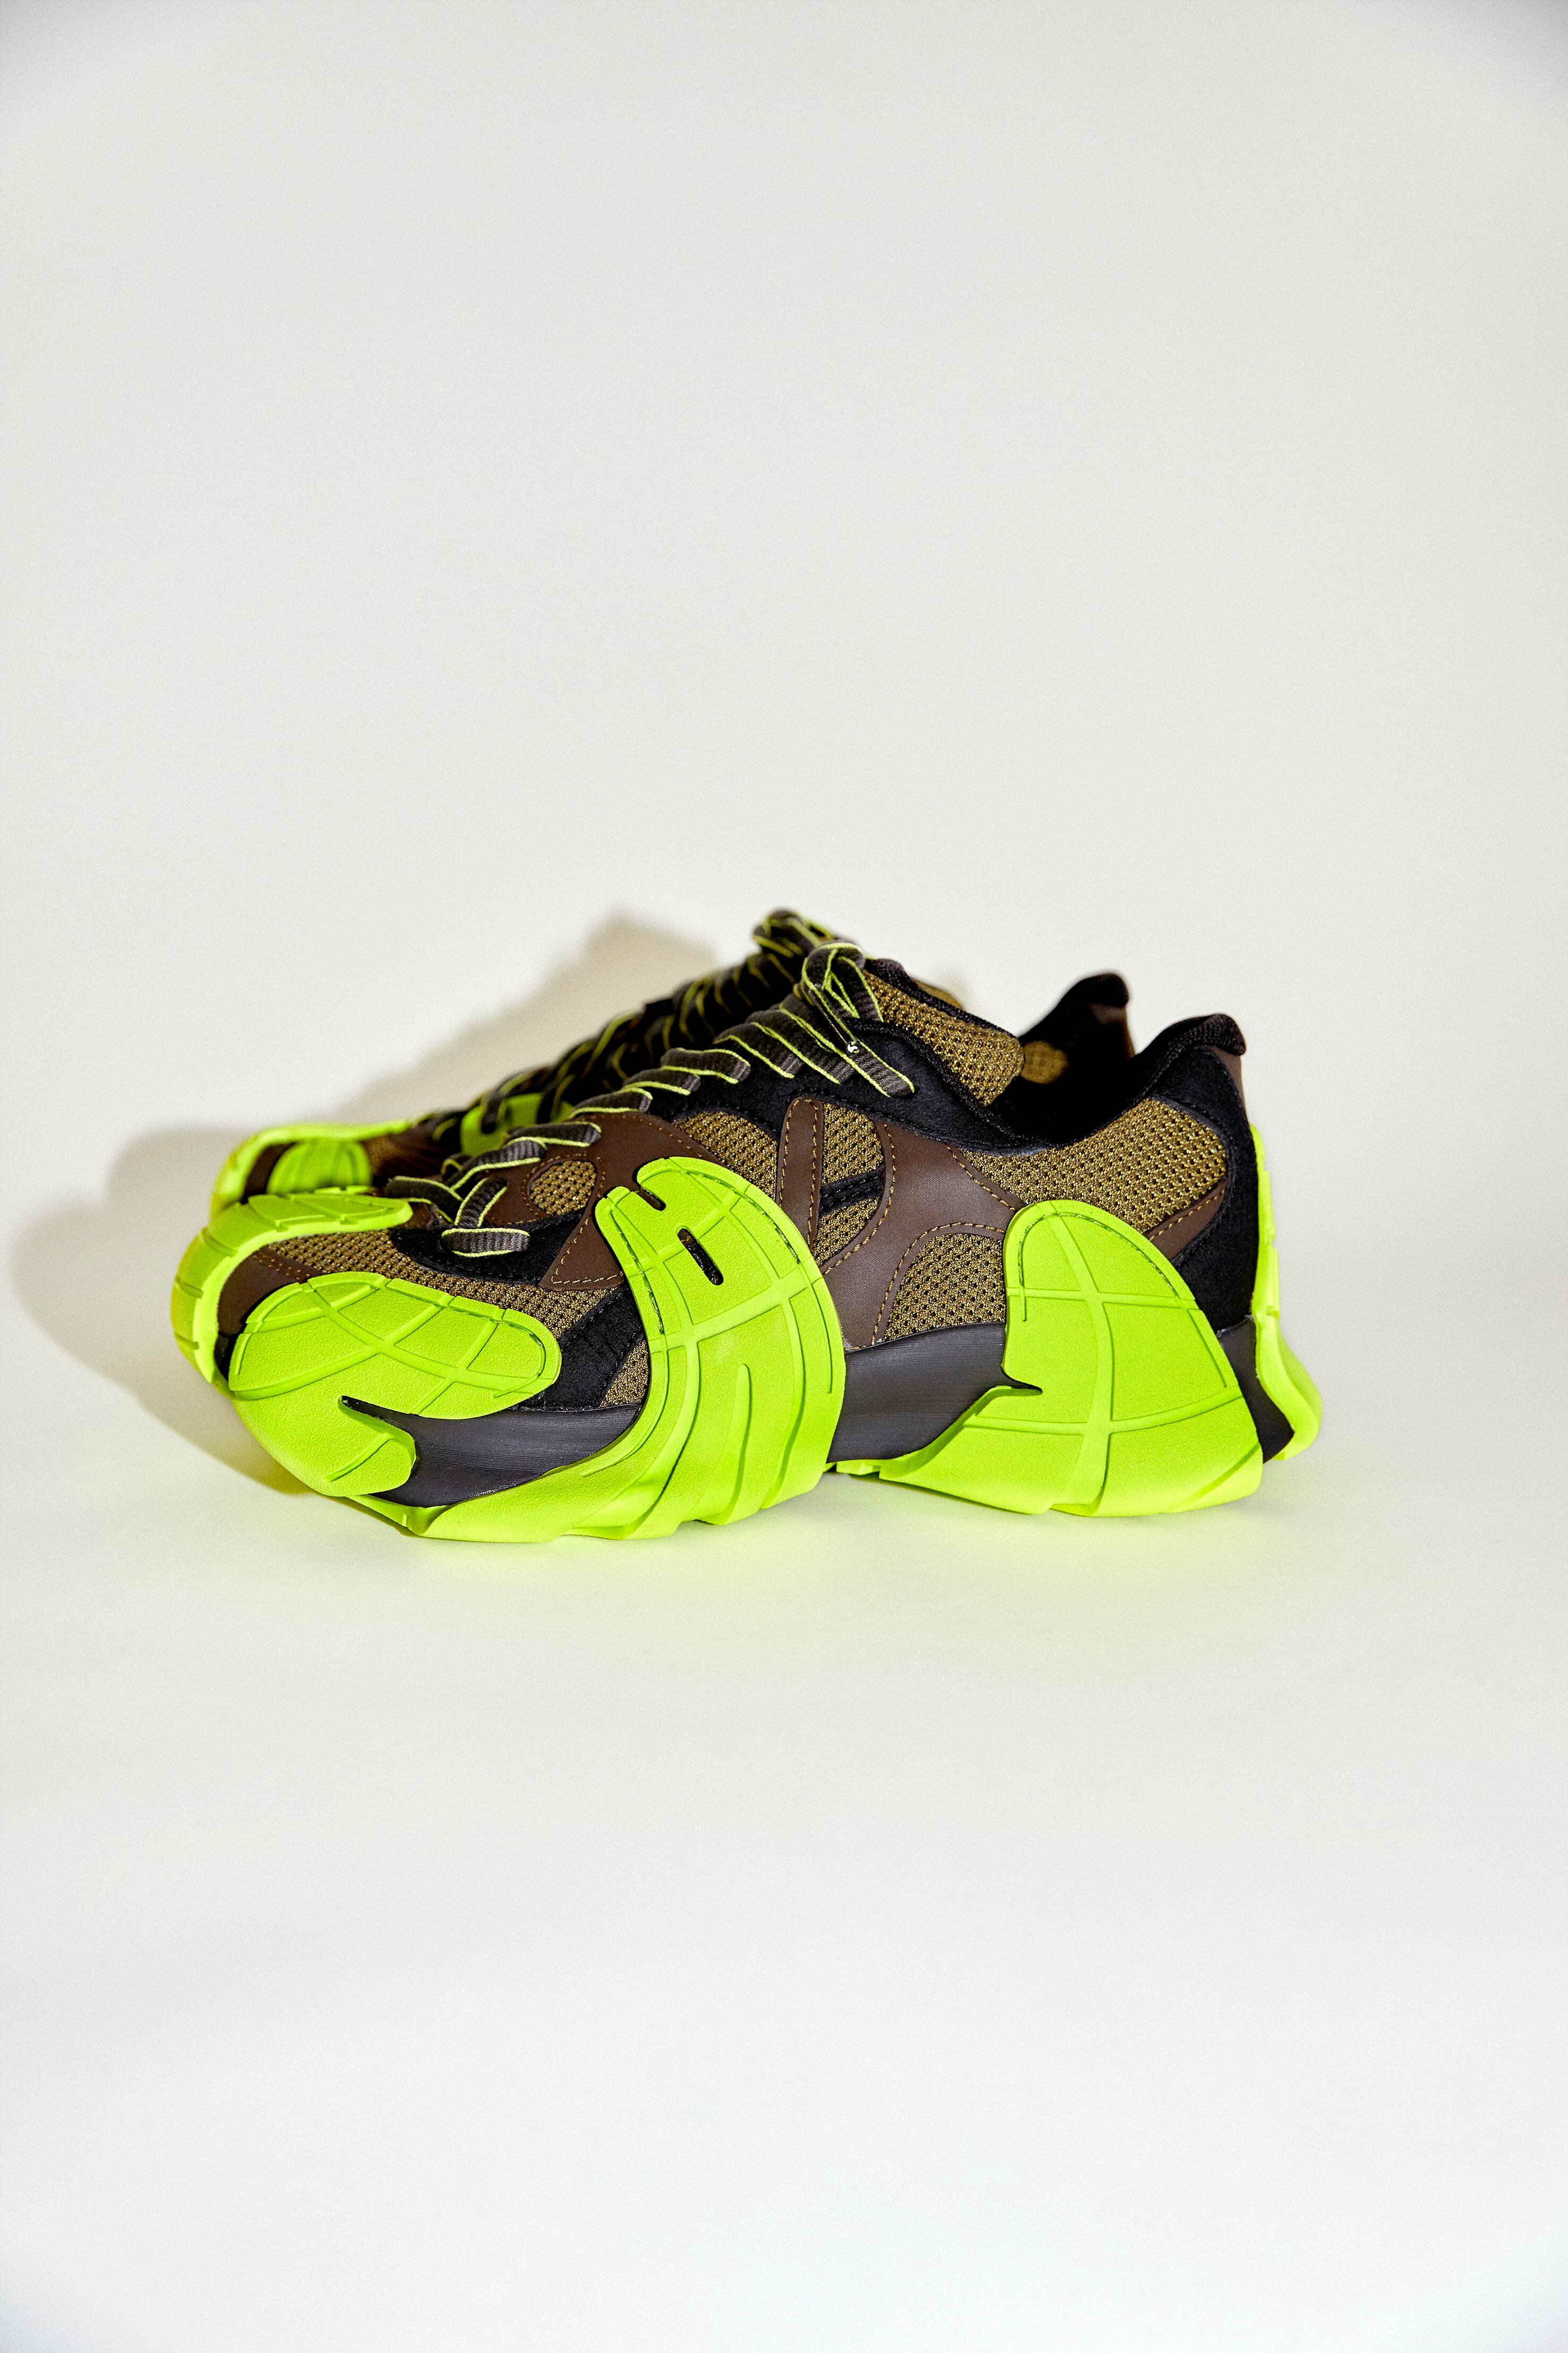 Modelo Tormenta, las zapatillas sostenibles de Camperlab formadas por un calcetín interno y paneles reciclables, moldeados por inyección.